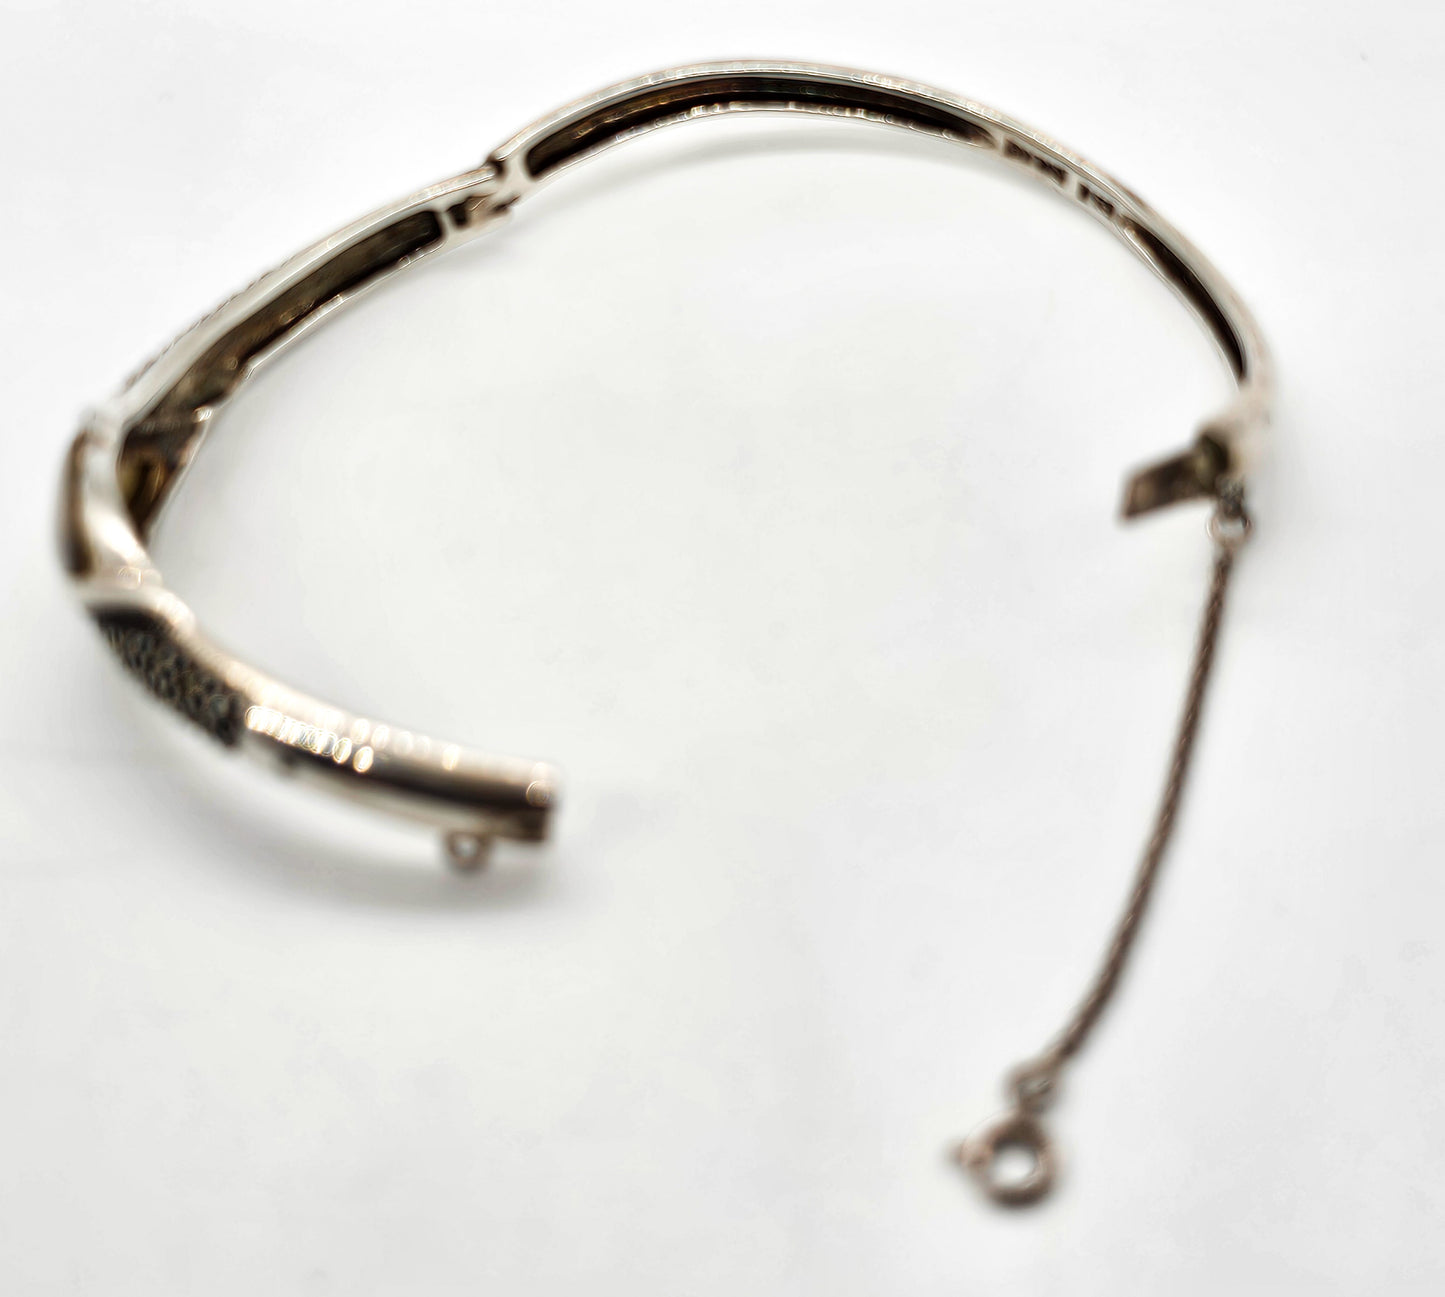 Mother of Pearl MOP marcasite vintage sterling silver vintage bangle bracelet